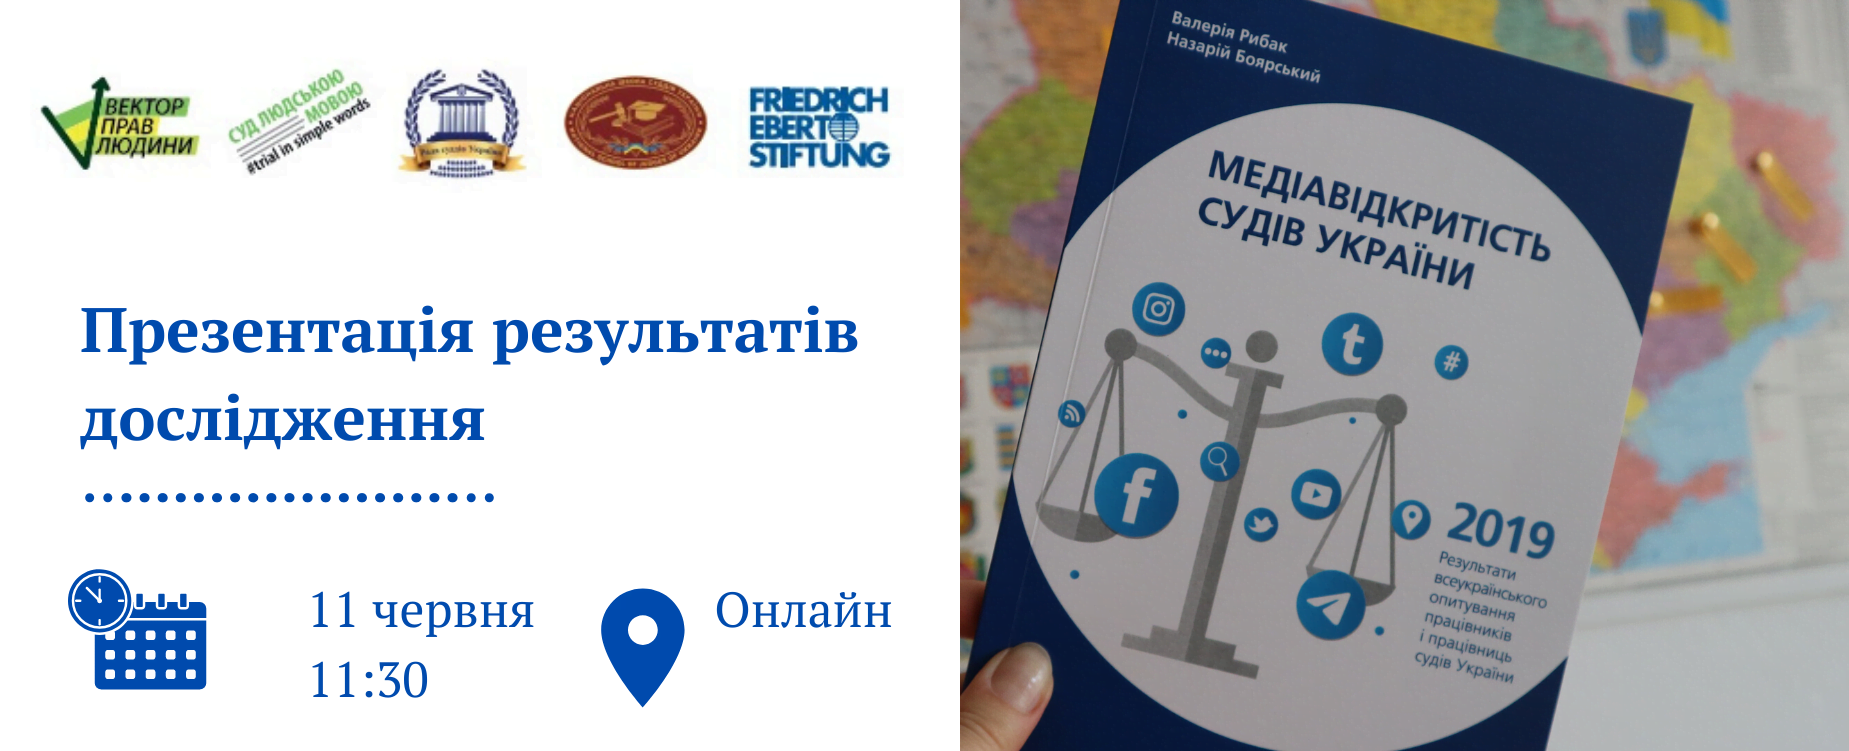 Відбулась презентація дослідження «Медіавідкритість судів України-2019»